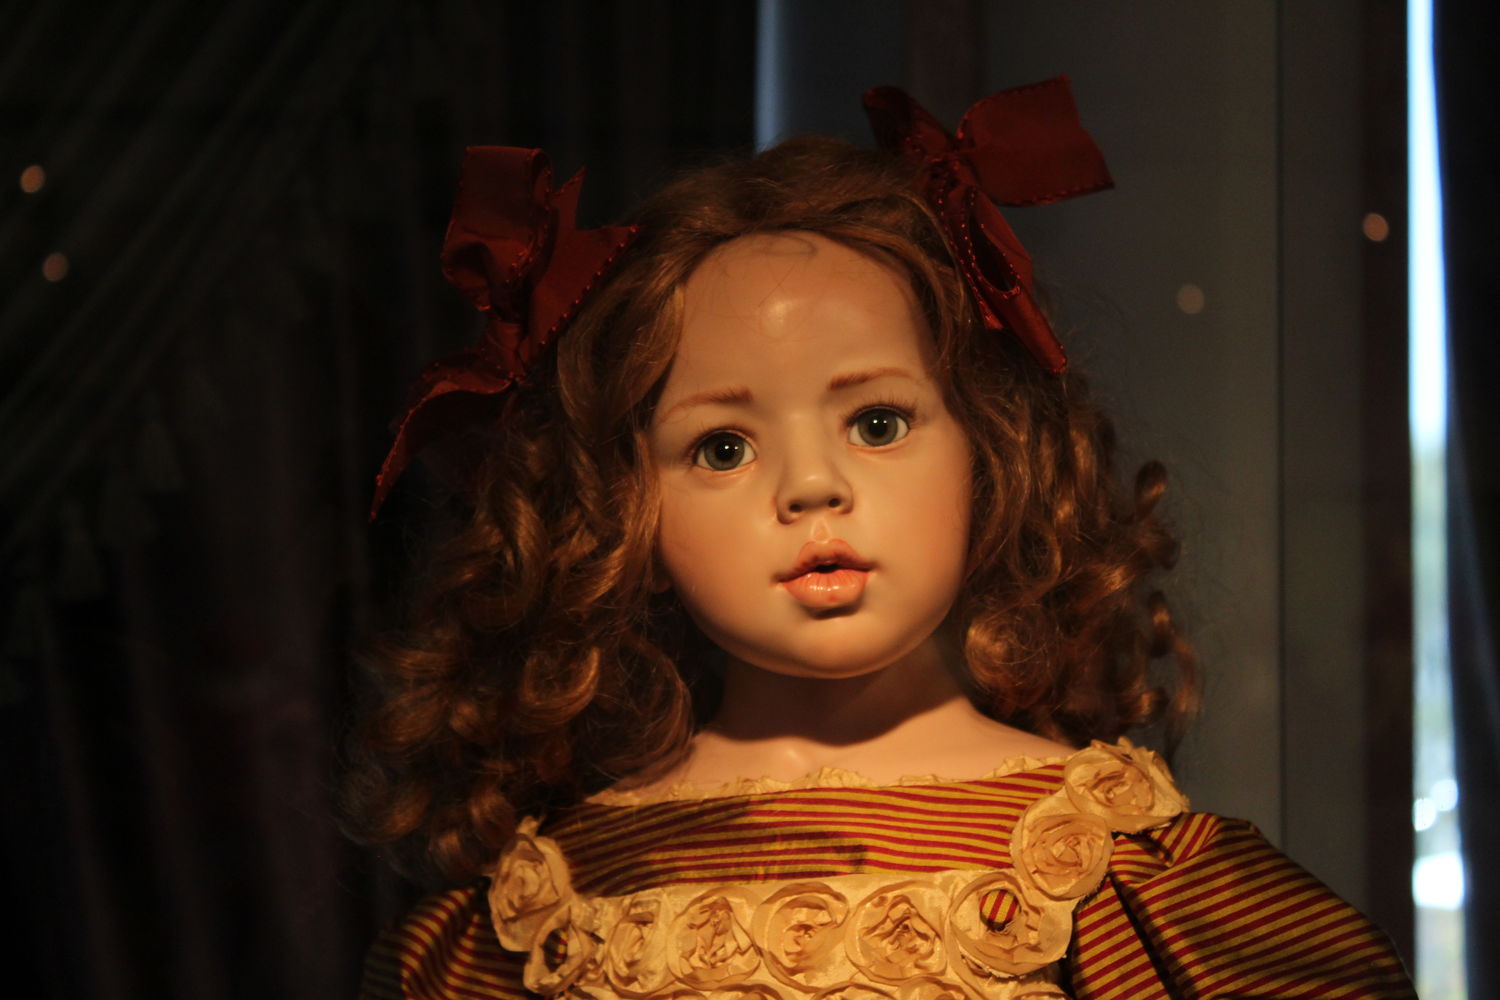 Царство кукол: уникальная галерея открылась в Нижнем Новгороде (ФОТО) - фото 5